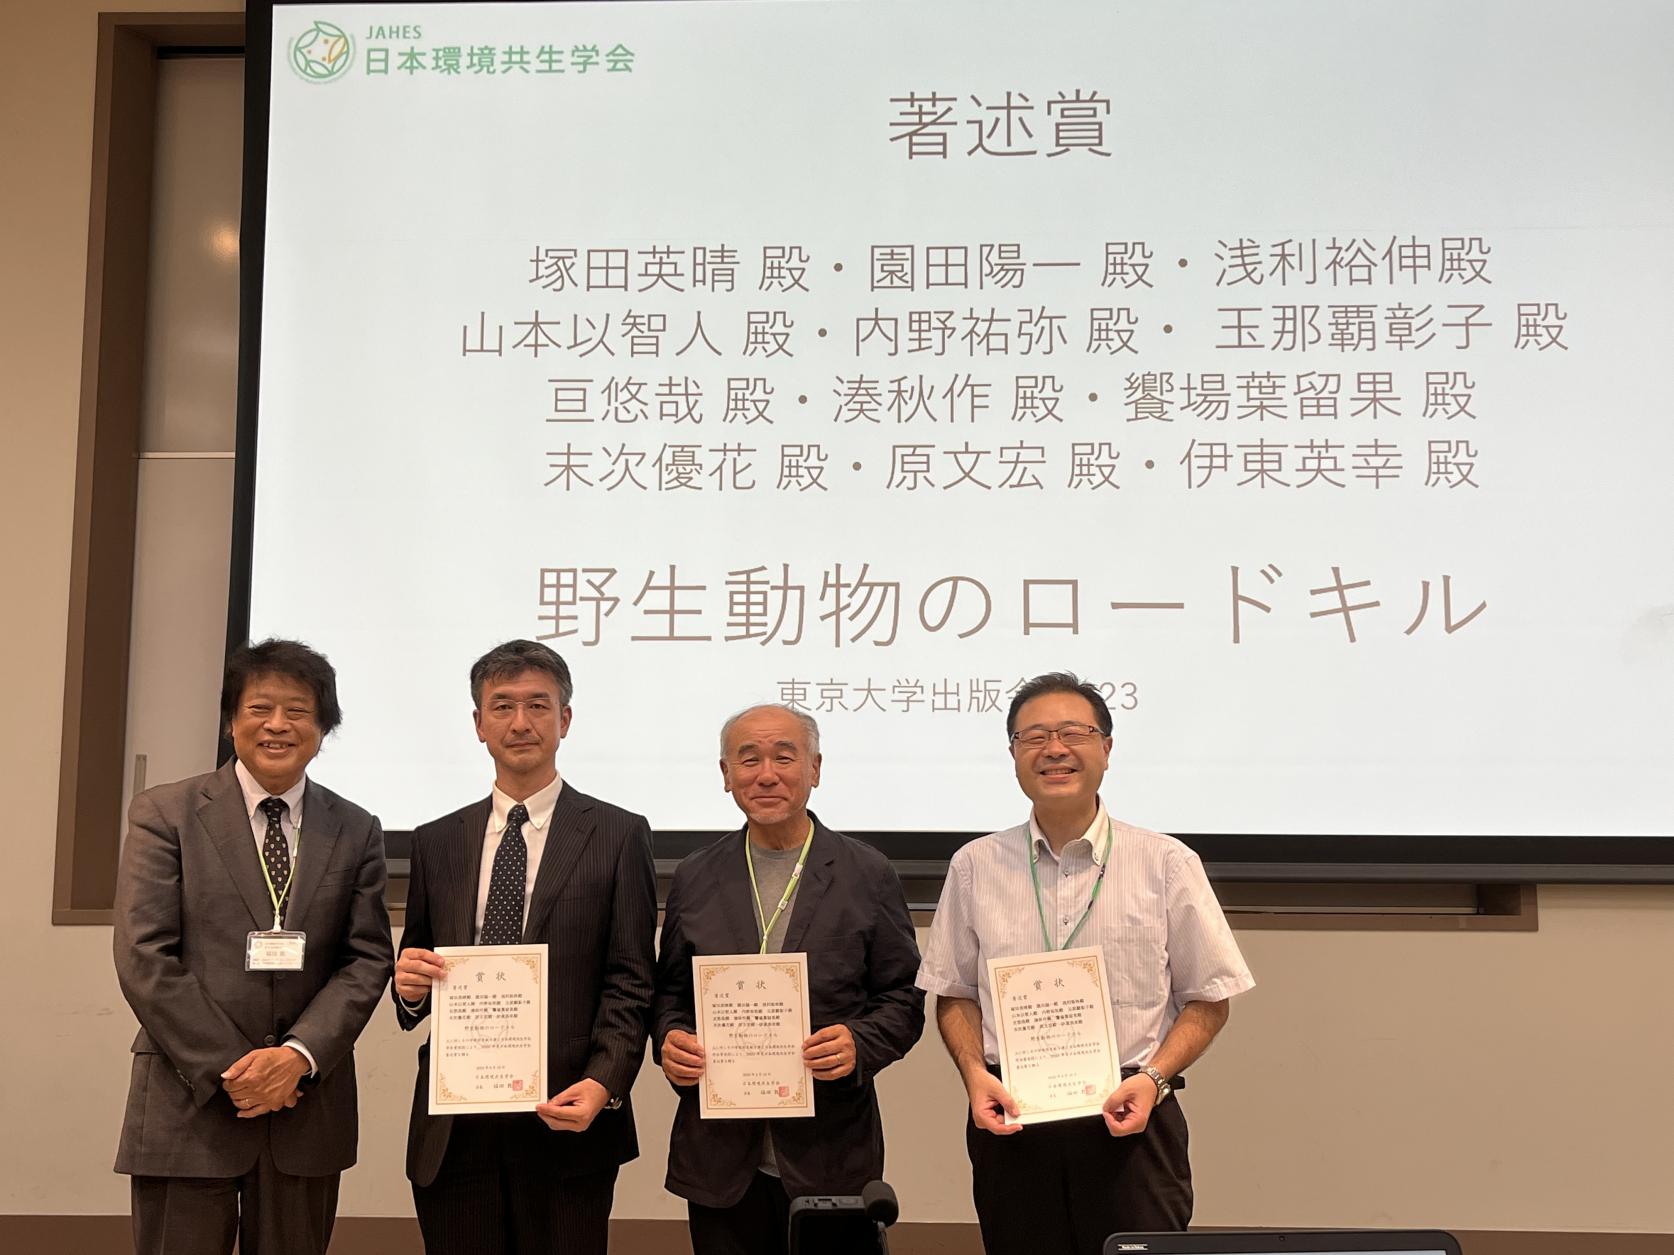 交通システム工学科の伊東英幸教授が日本環境共生学会において「著述賞」を受賞しました。